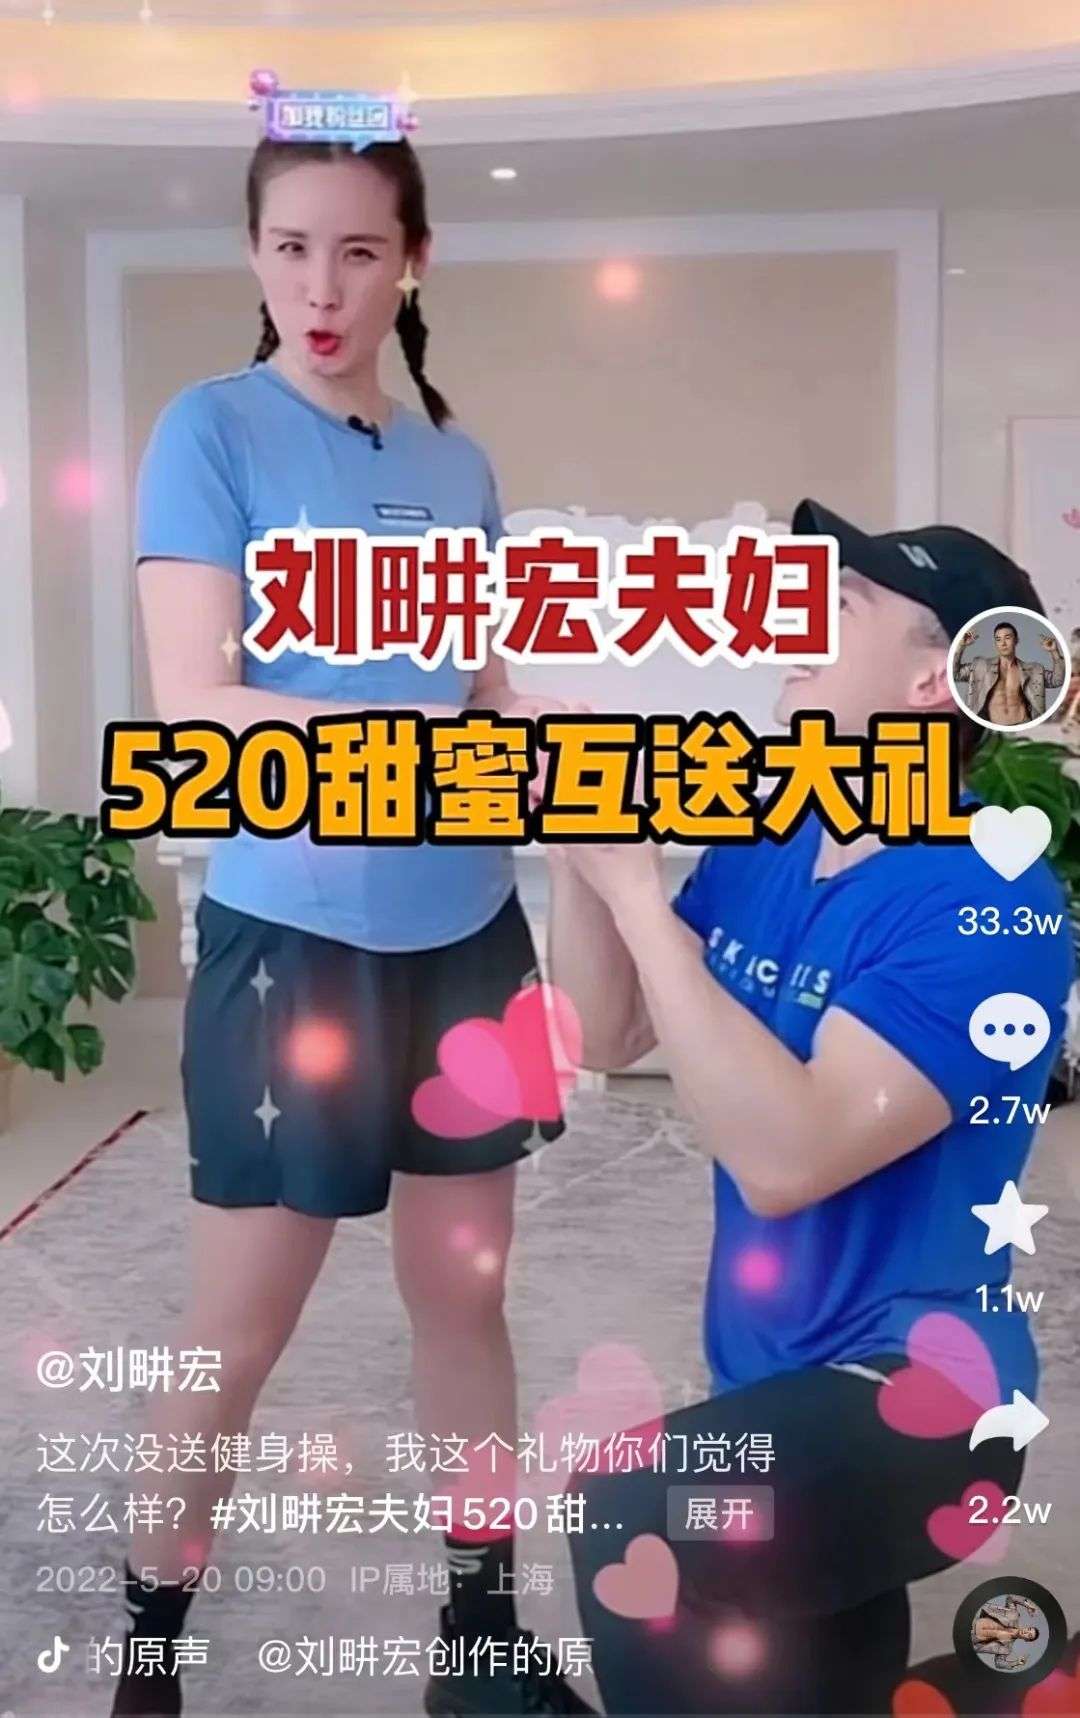 《浪姐3》播放量超51亿元，刘畊宏妻子霸屏热搜